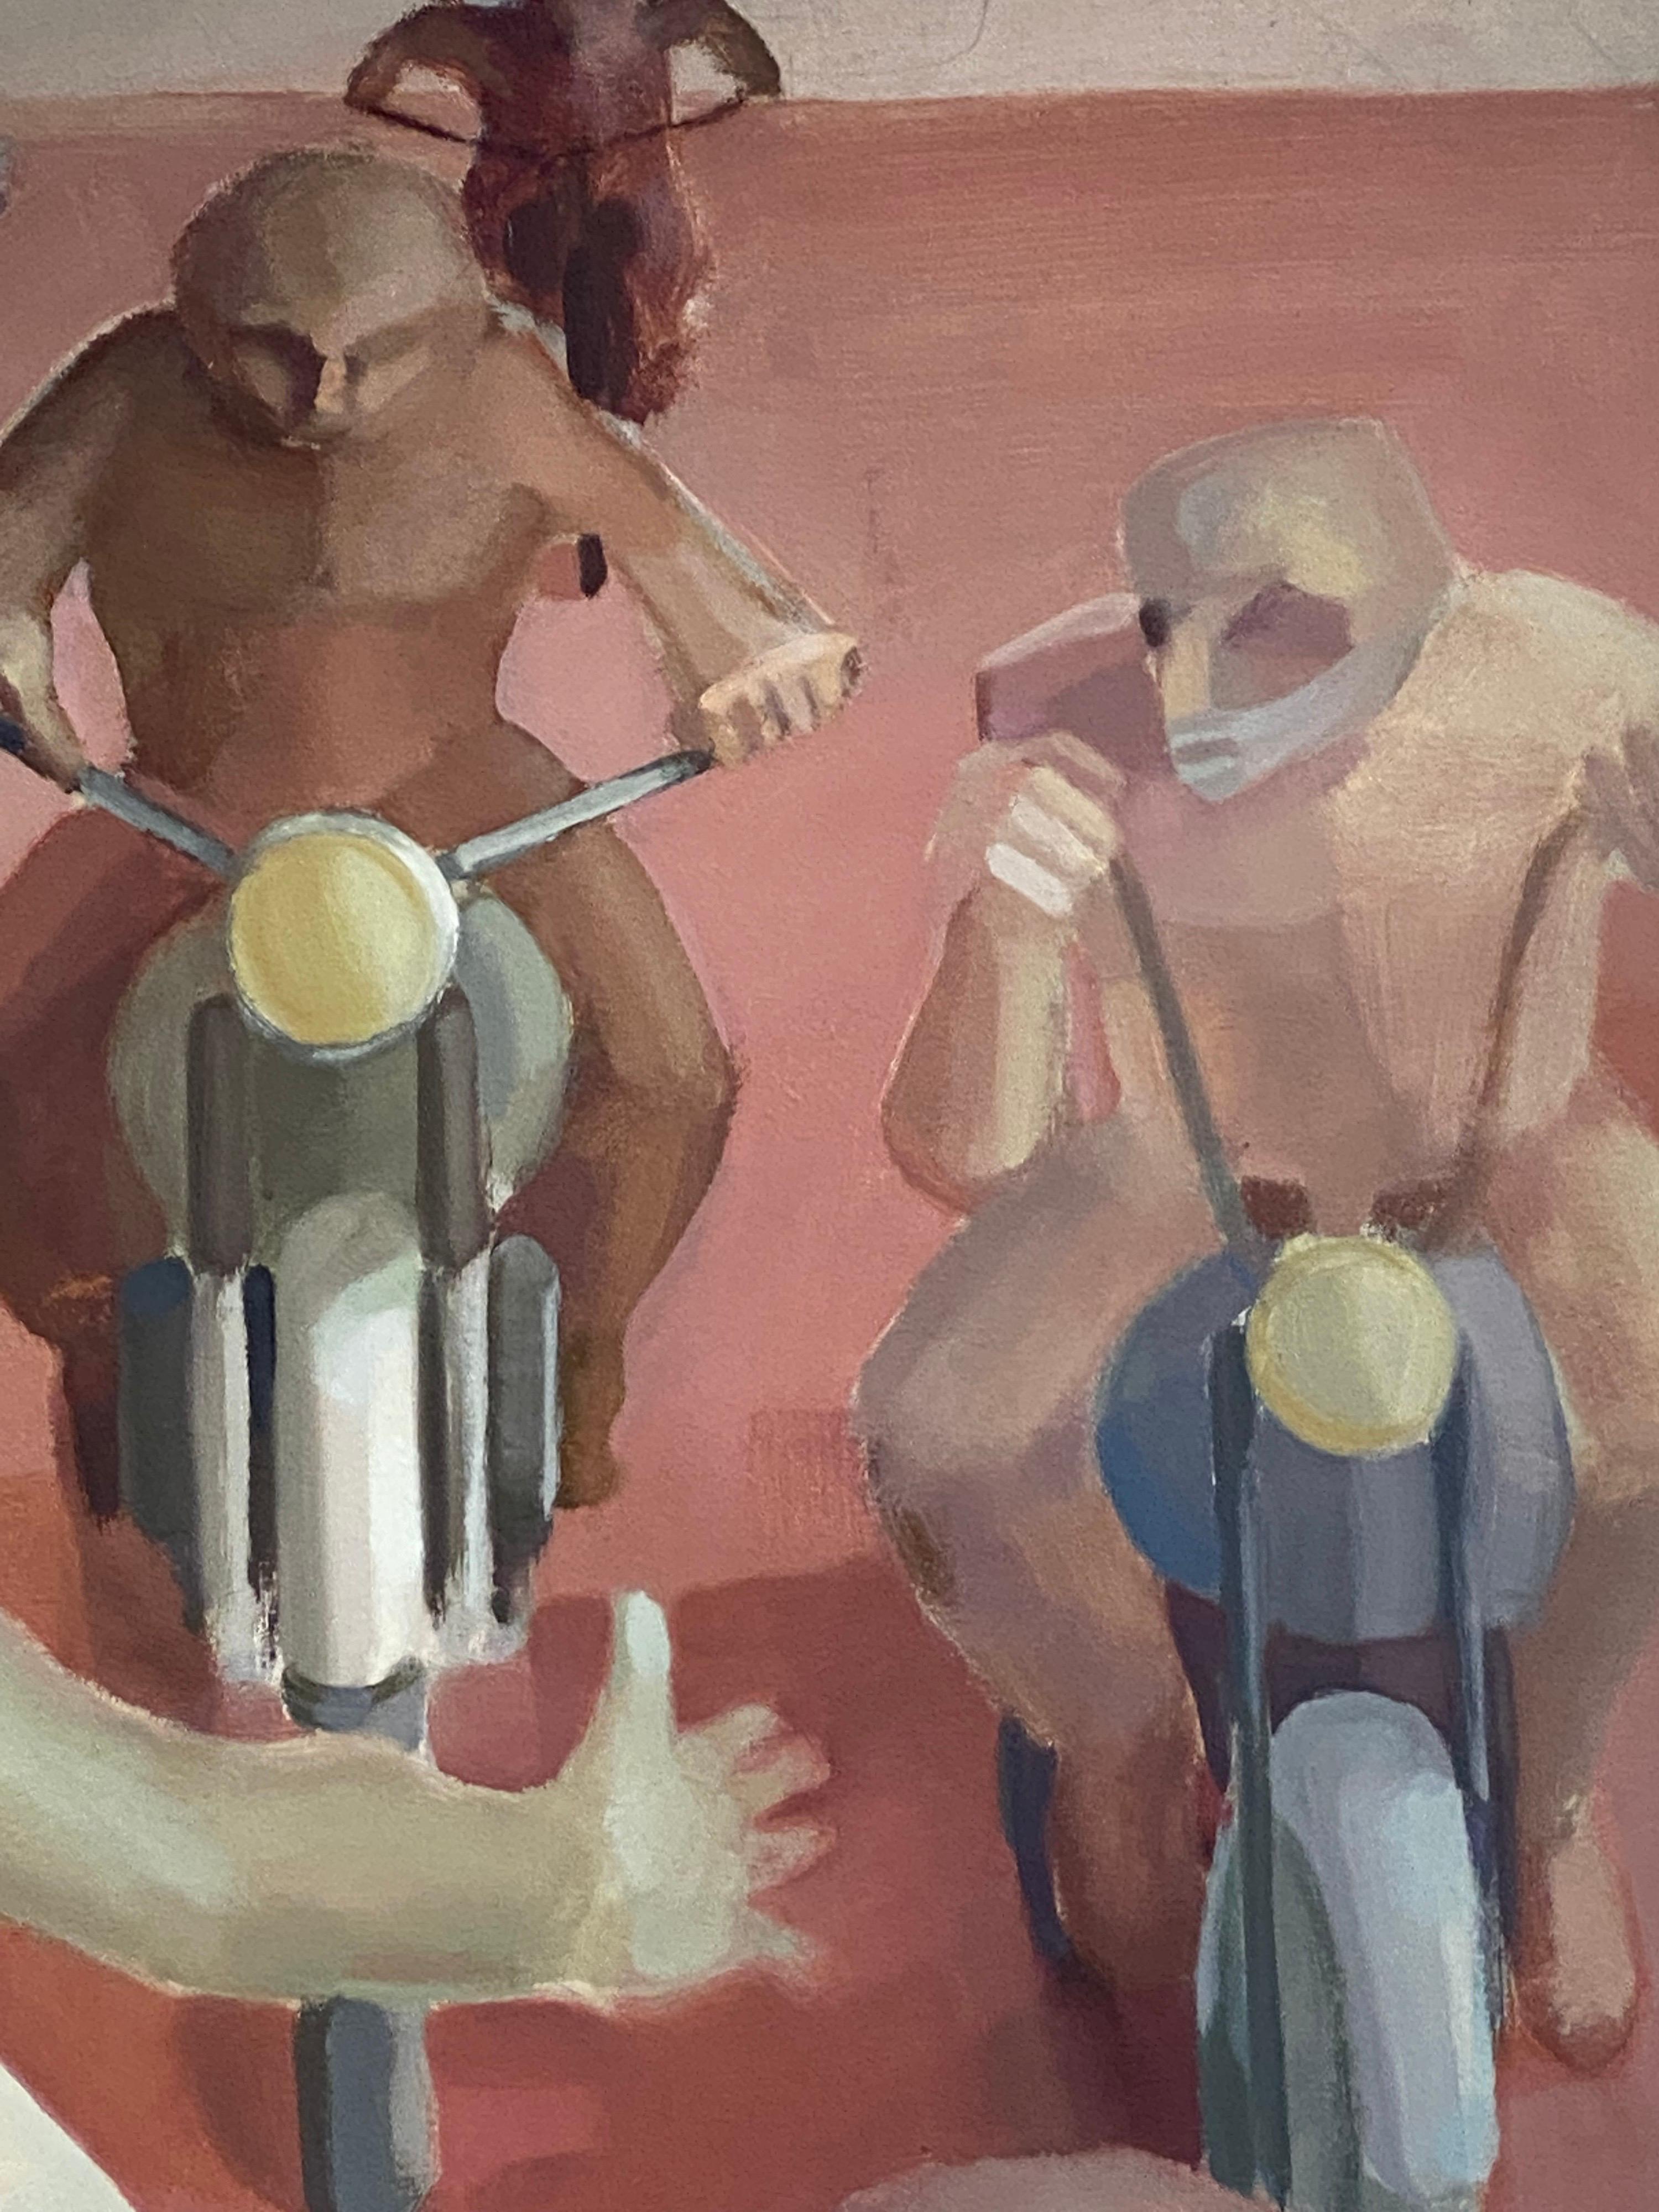 Male Biker in der Wüste – Großes französisches surrealistisches Ölgemälde, figürliche Szene  (Braun), Abstract Painting, von Andres